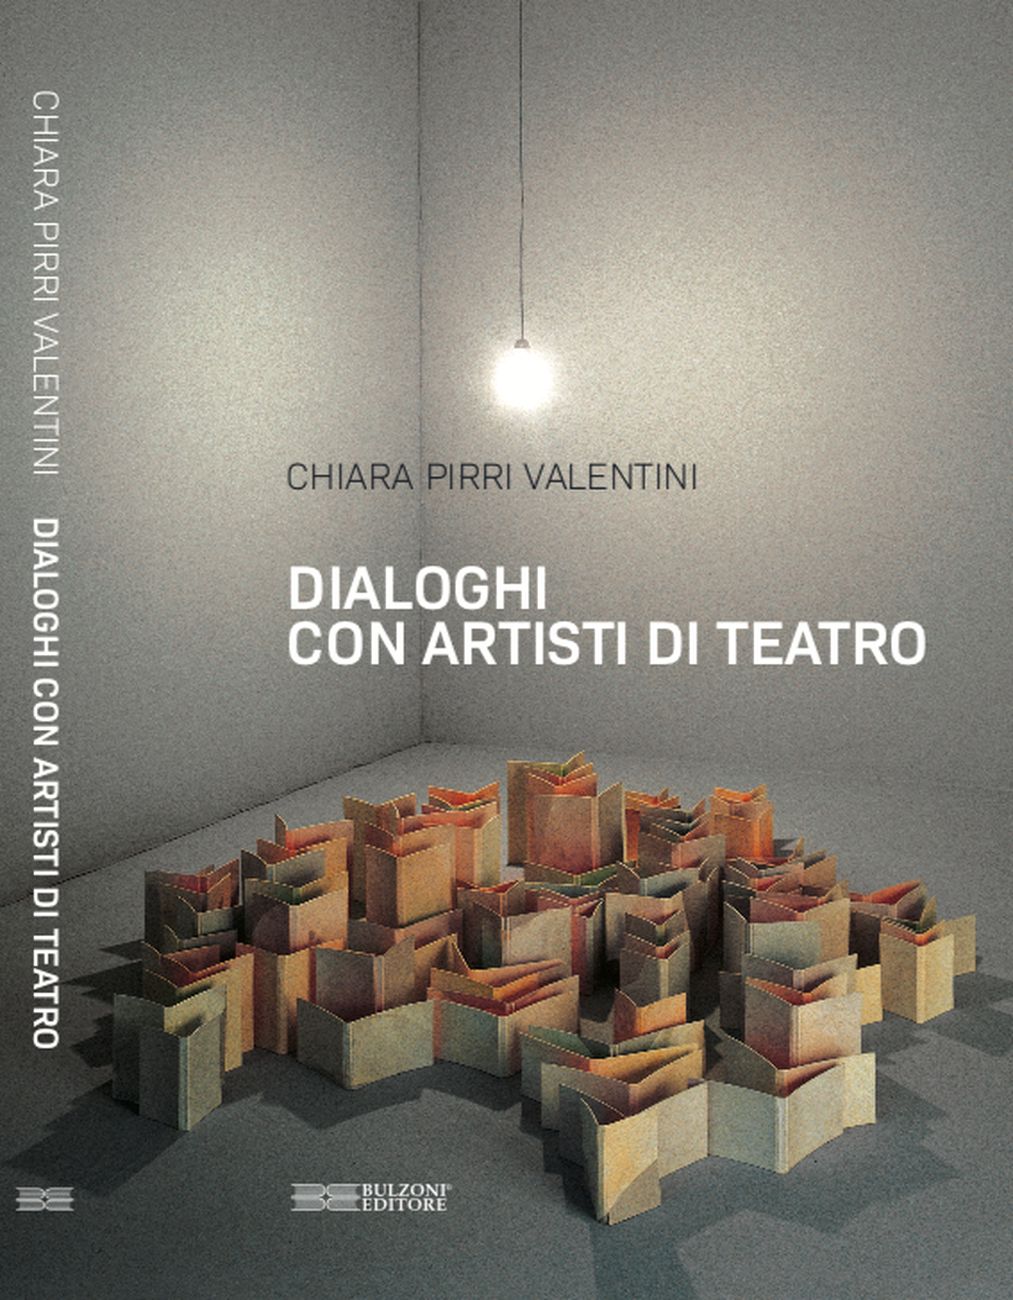 Chiara Pirri Valentini – Dialoghi con artisti di teatro (Bulzoni Editore, Roma 2021)